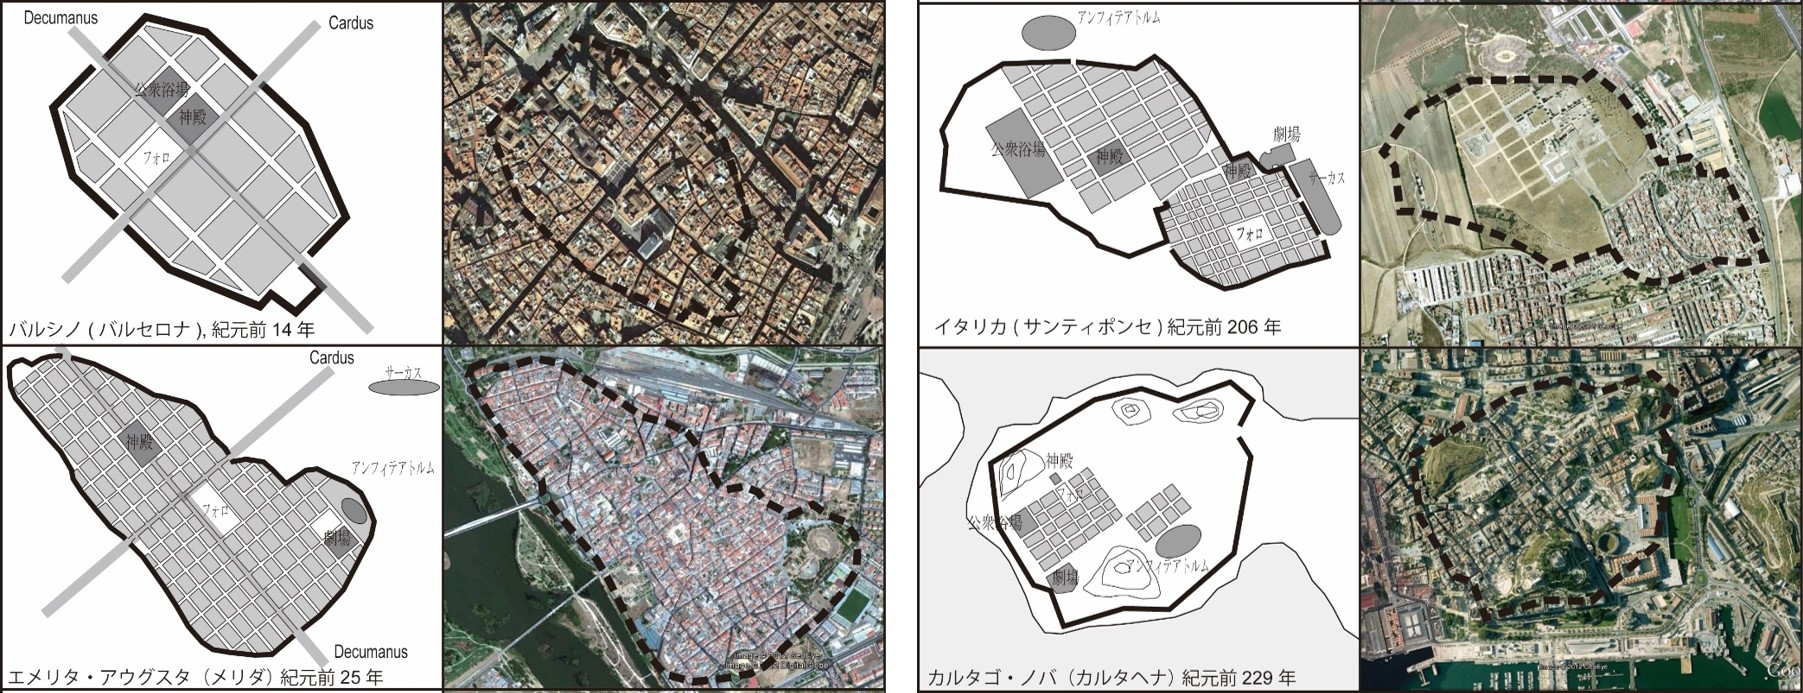 図1-4 「ローマ・クワドラータ(正方形のローマ)」と呼ばれるグリッド(碁盤目)・パターンの街区